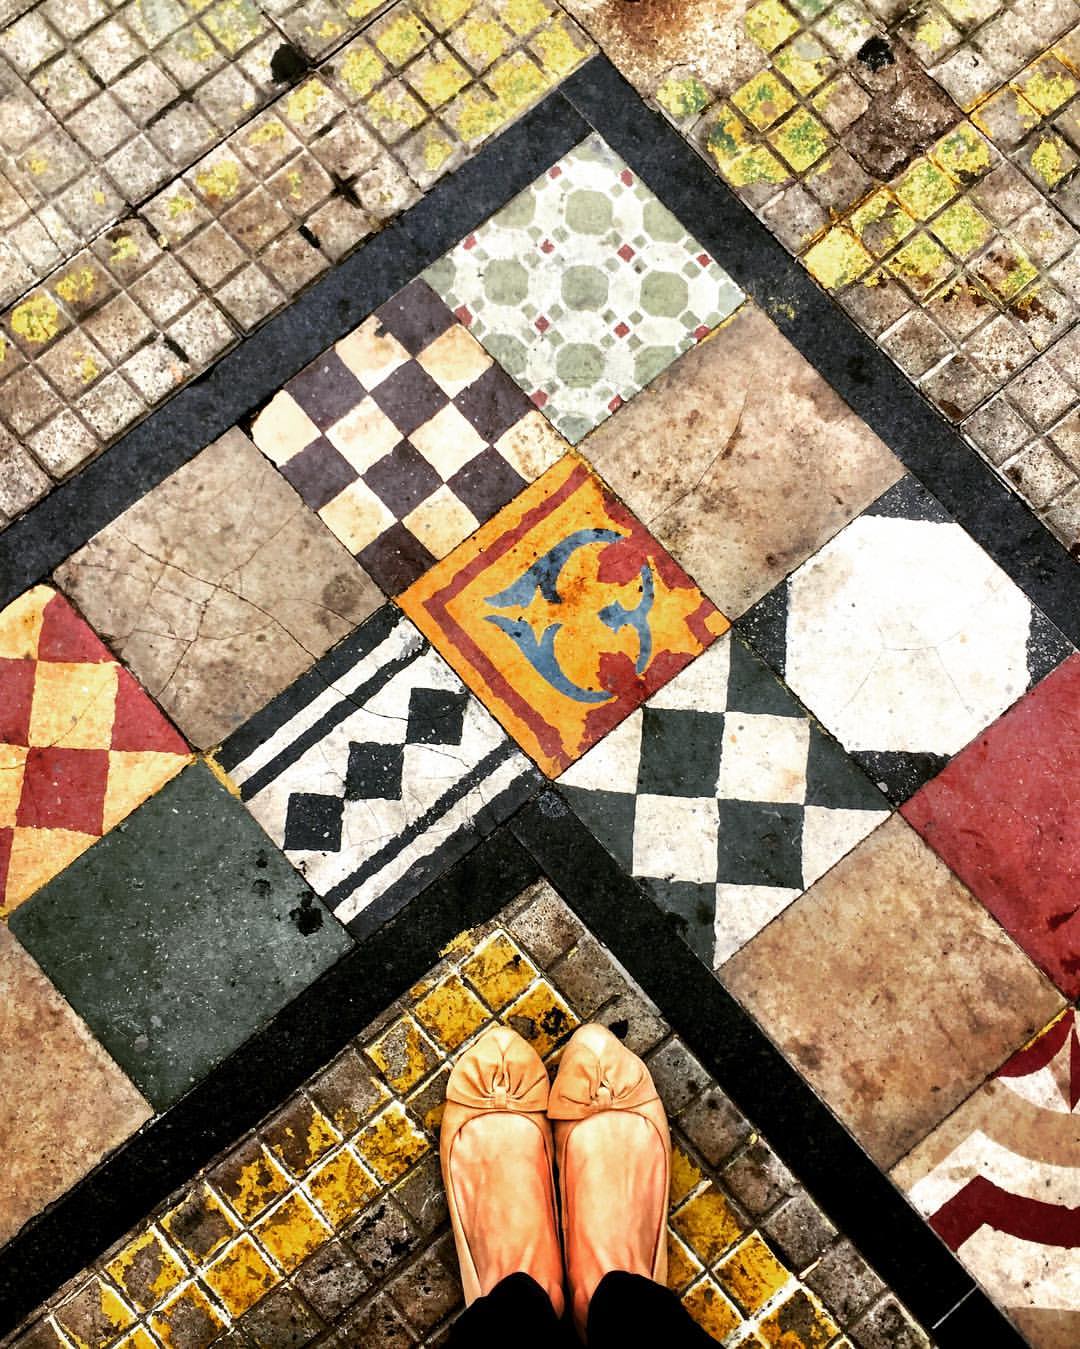  #paracegover A imagem mostra uma calçada decorada com azulejos hidráulicos coloridos, formando um ângulo reto. Meus pés aparecem no canto inferior, na base do triângulo. — at Boi lourdes.